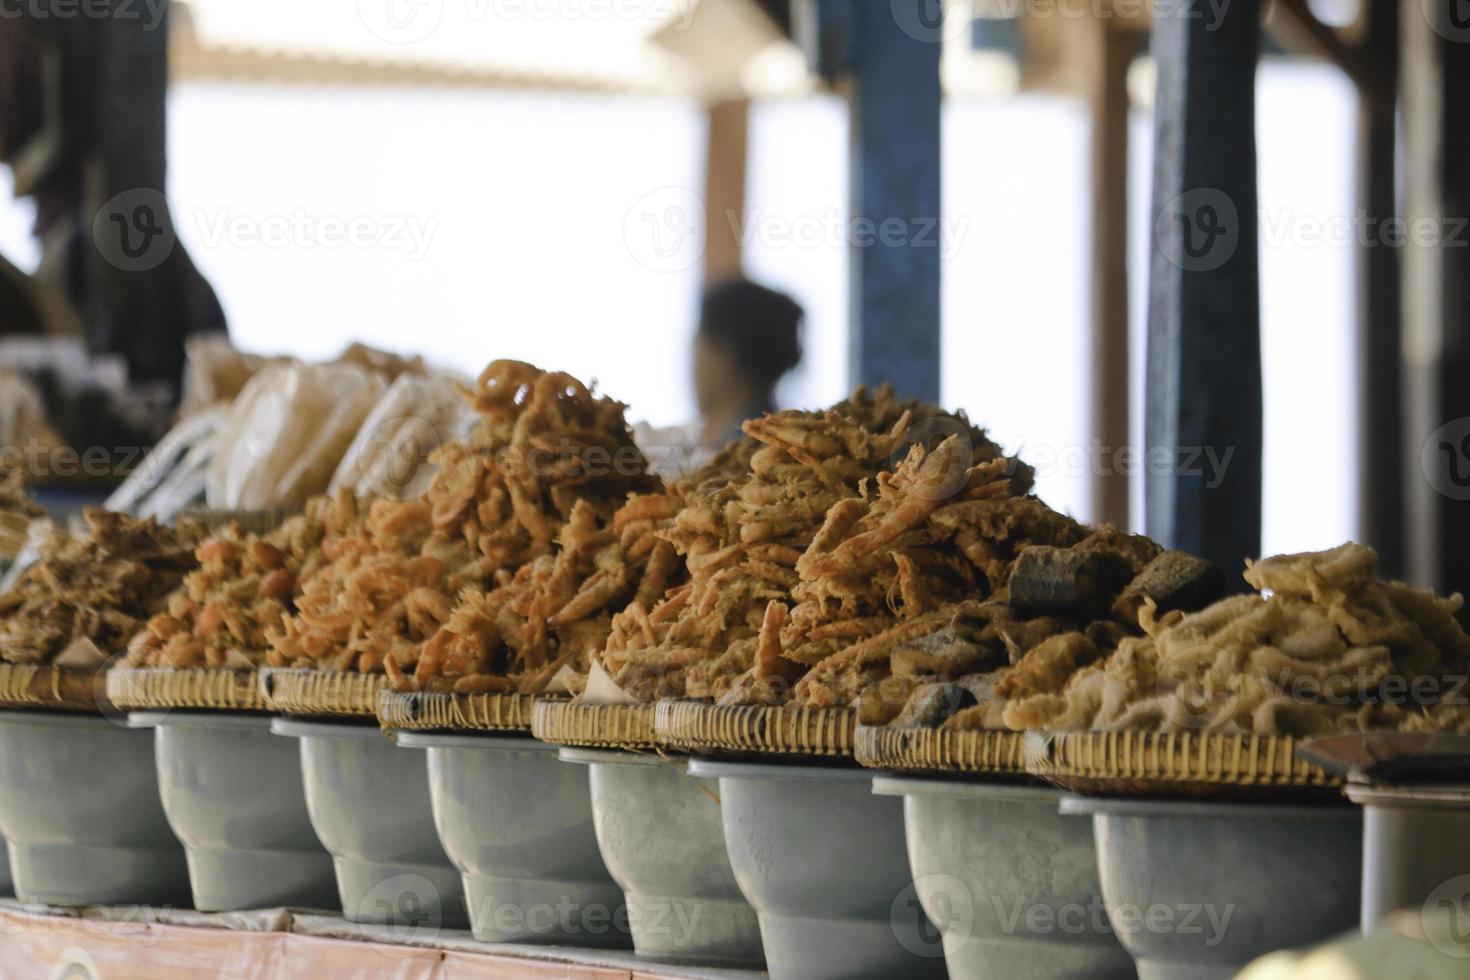 camarones fritos en una calle de la ciudad en gunung kidul, indonesia. foto